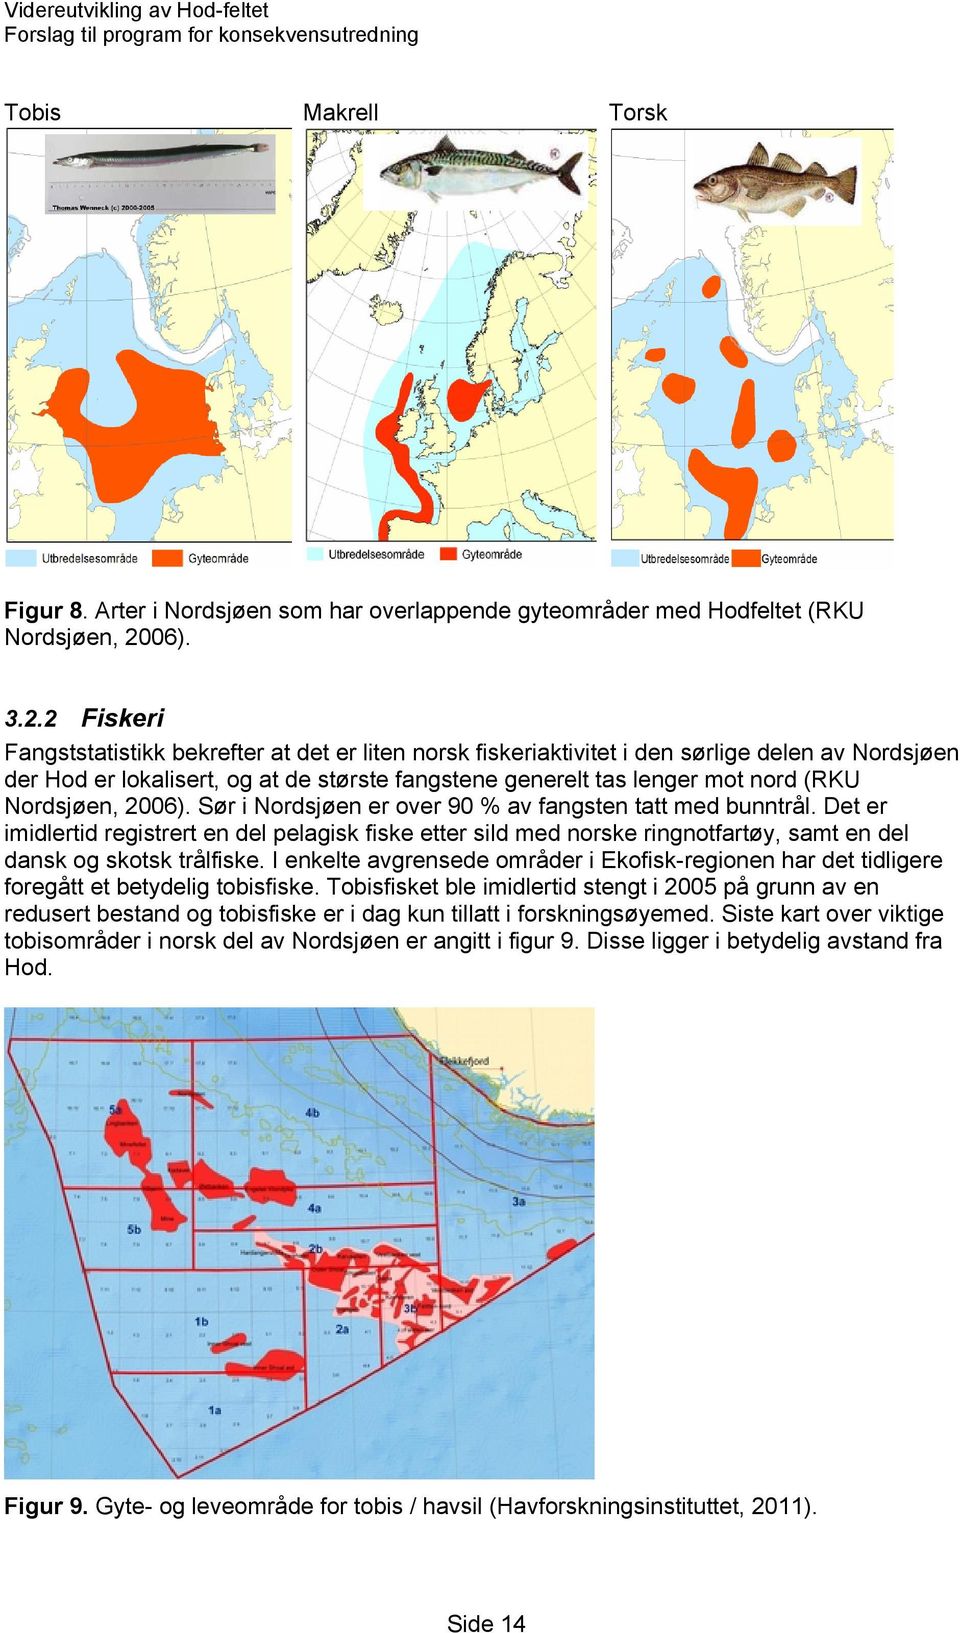 2 Fiskeri Fangststatistikk bekrefter at det er liten norsk fiskeriaktivitet i den sørlige delen av Nordsjøen der Hod er lokalisert, og at de største fangstene generelt tas lenger mot nord (RKU